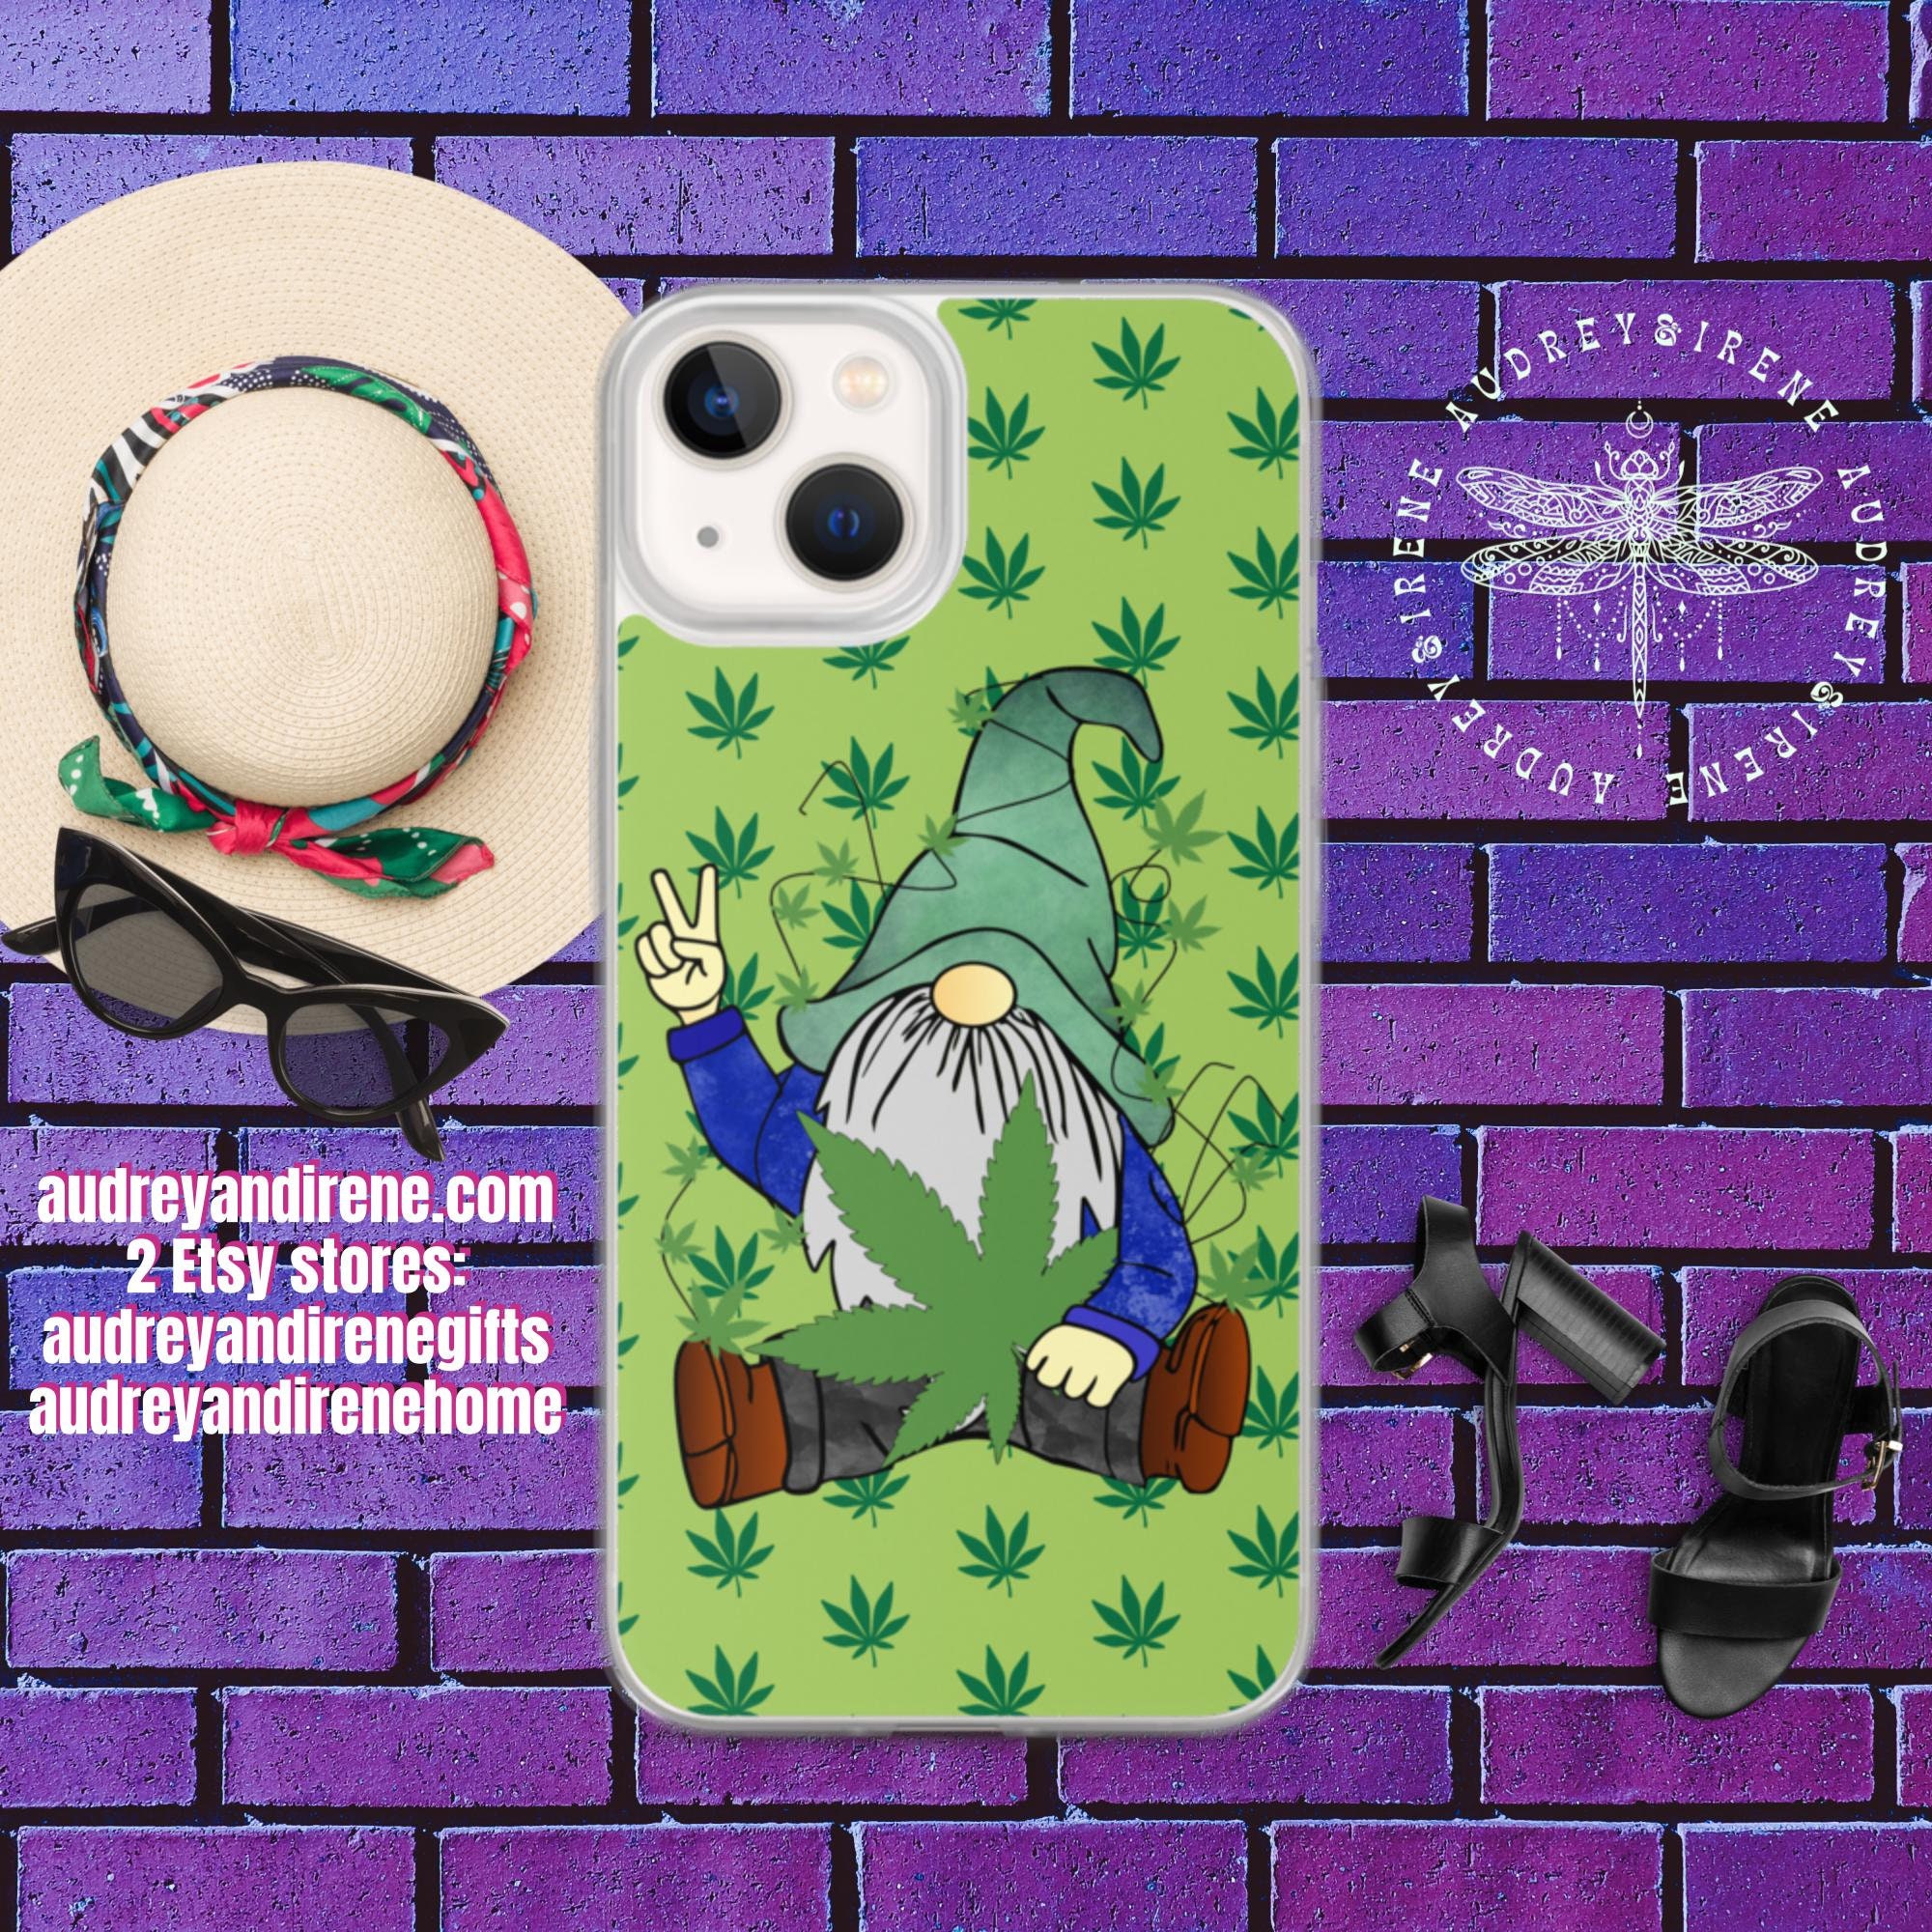 Hippie Gnome Marijuana Leaf iPhone Case